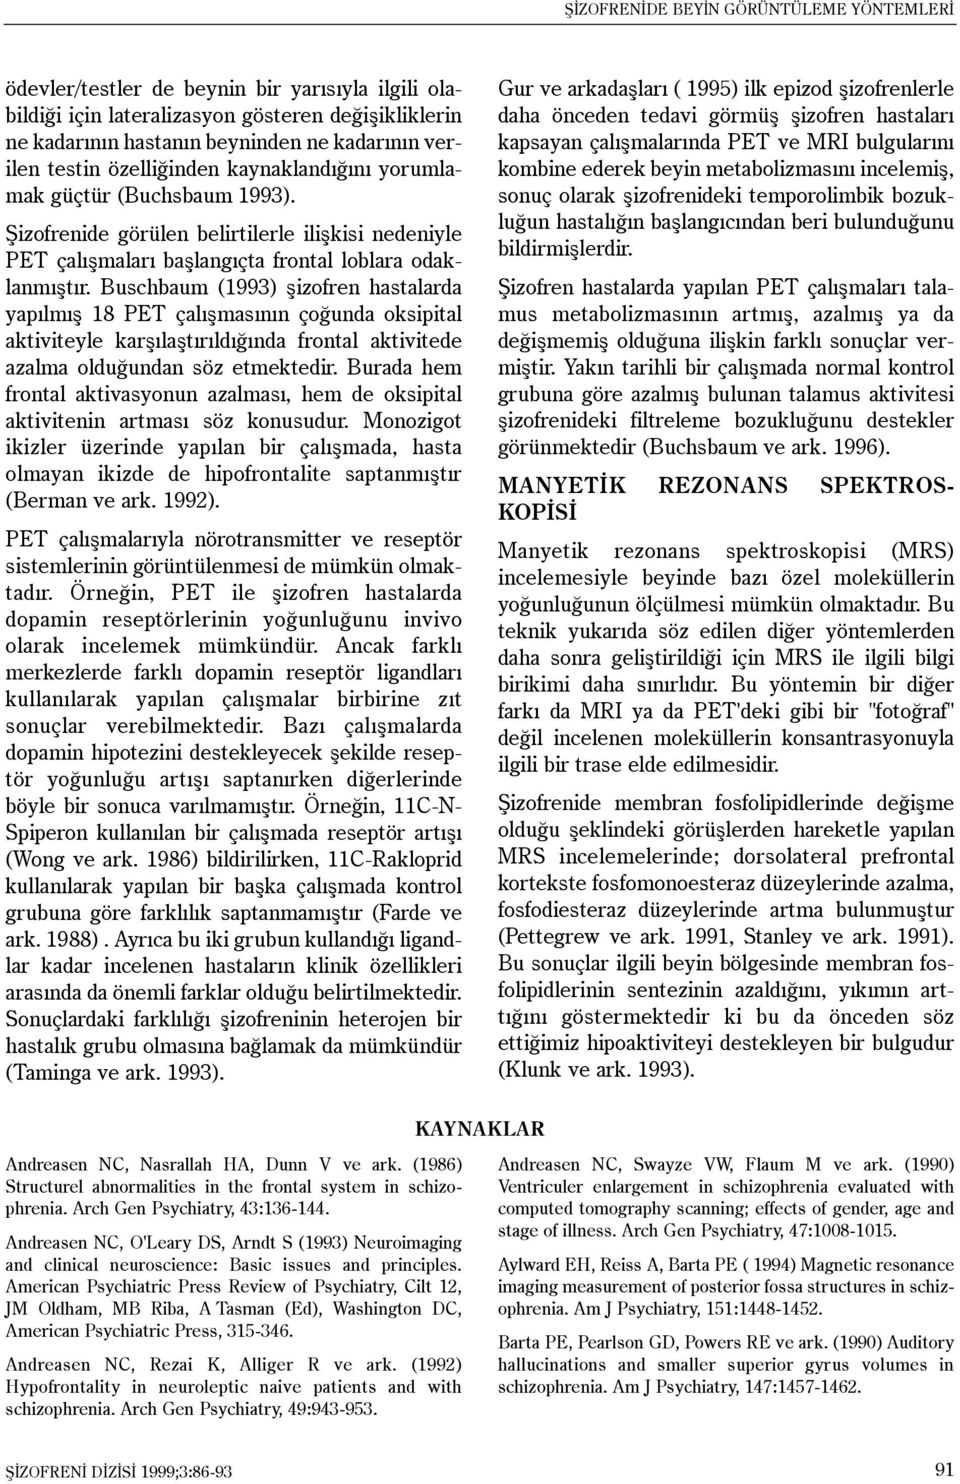 Buschbaum (1993) þizofren hastalarda yapýlmýþ 18 PET çalýþmasýnýn çoðunda oksipital aktiviteyle karþýlaþtýrýldýðýnda frontal aktivitede azalma olduðundan söz etmektedir.